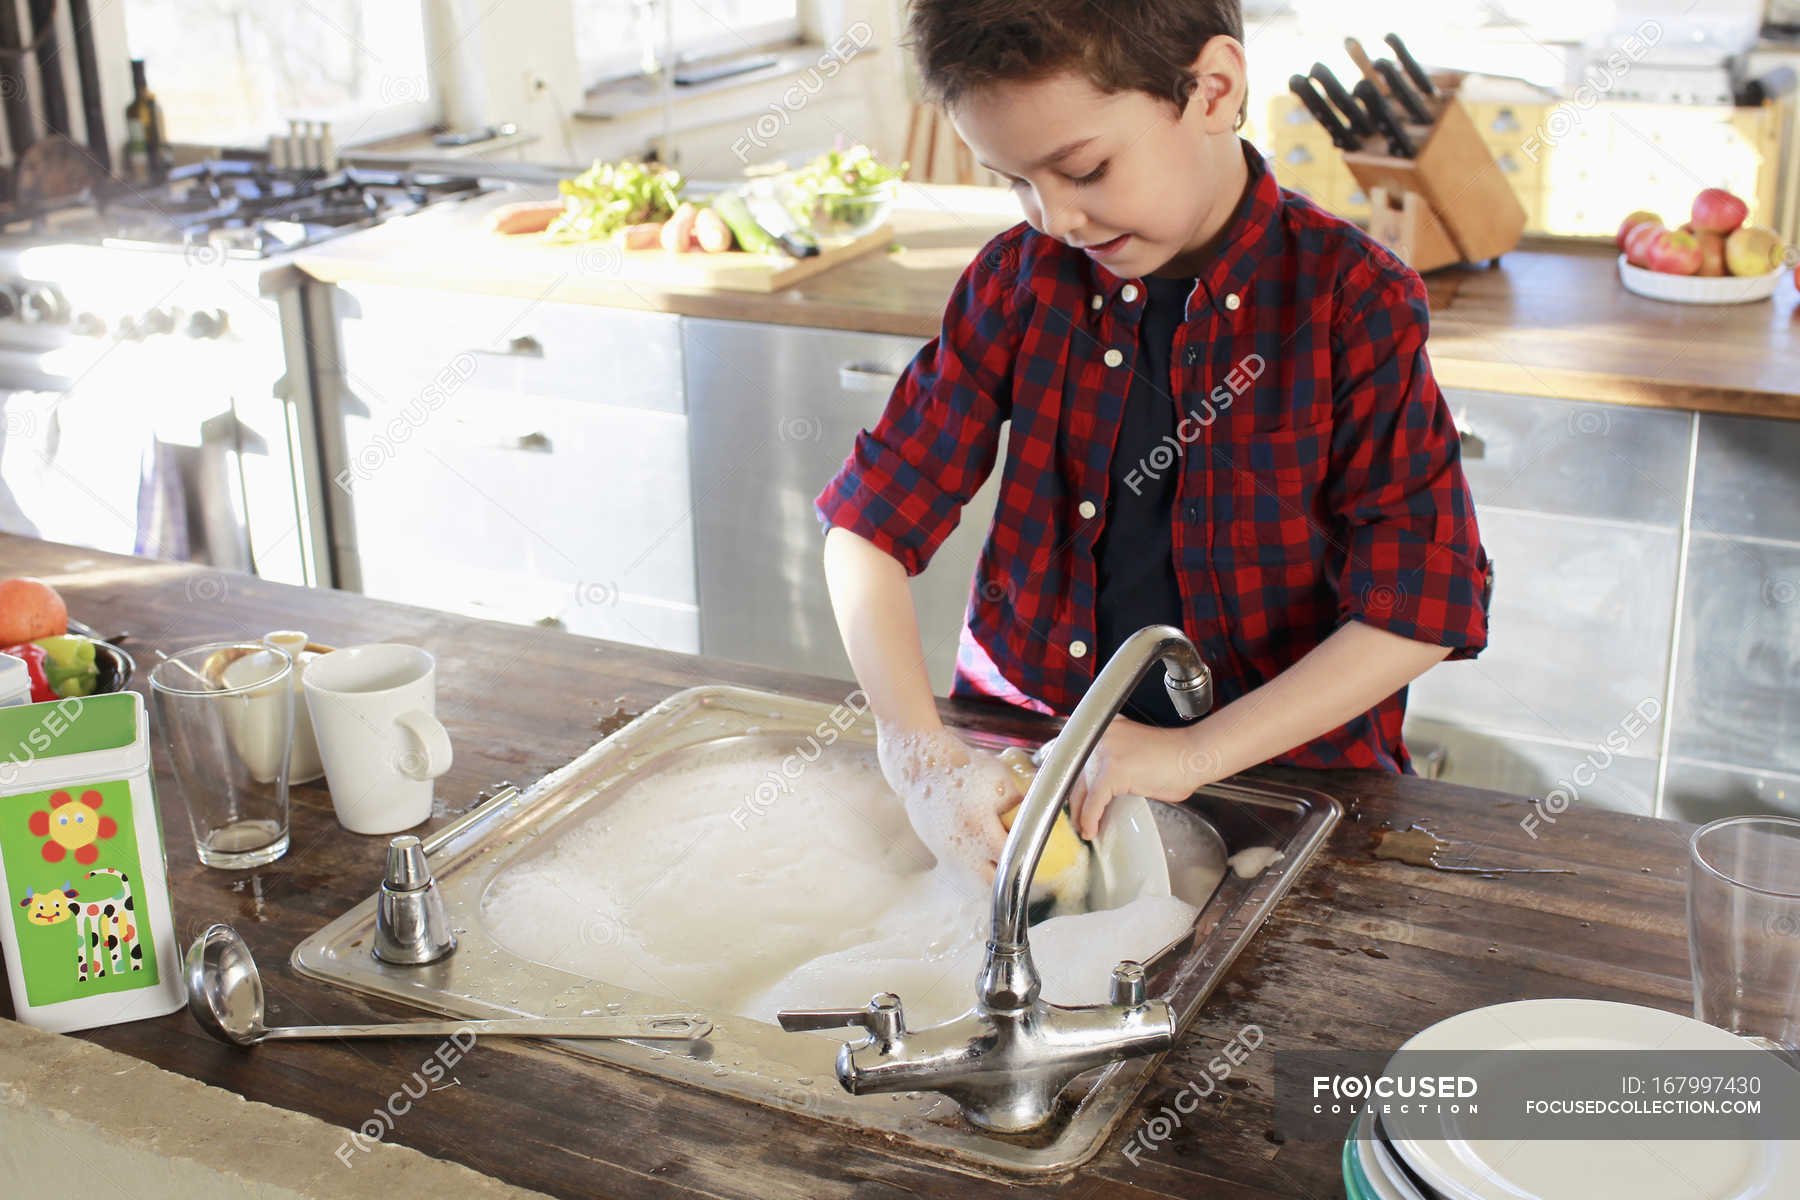 Vacuum the dishes. Мытье посуды. Мальчик моет посуду. Посуда для мальчиков. Детская посуда мытье.